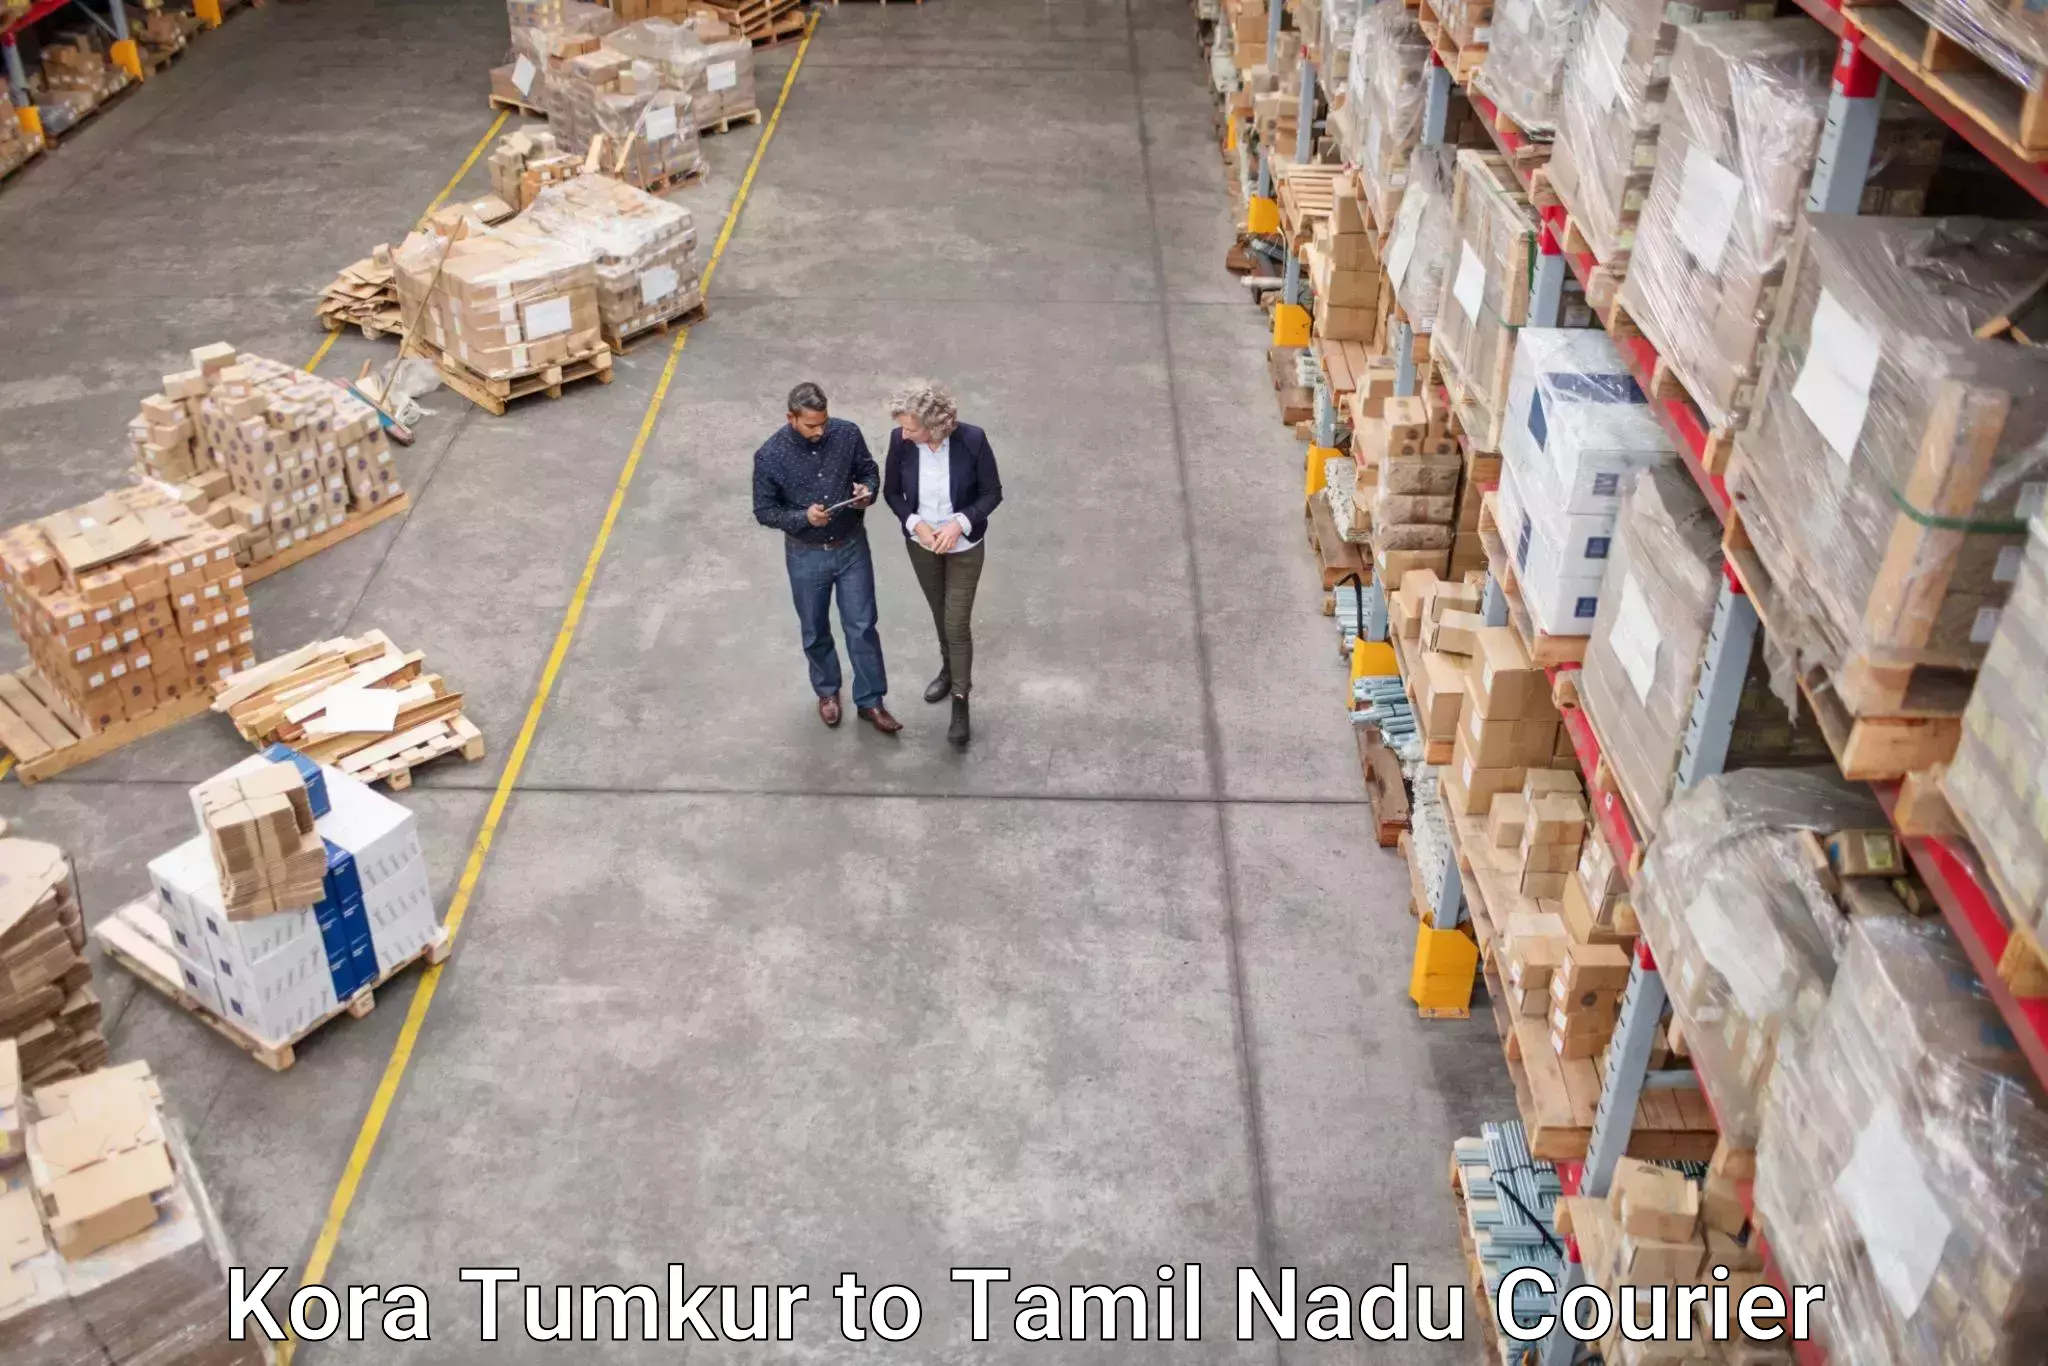 Global shipping networks Kora Tumkur to Muthukulathur